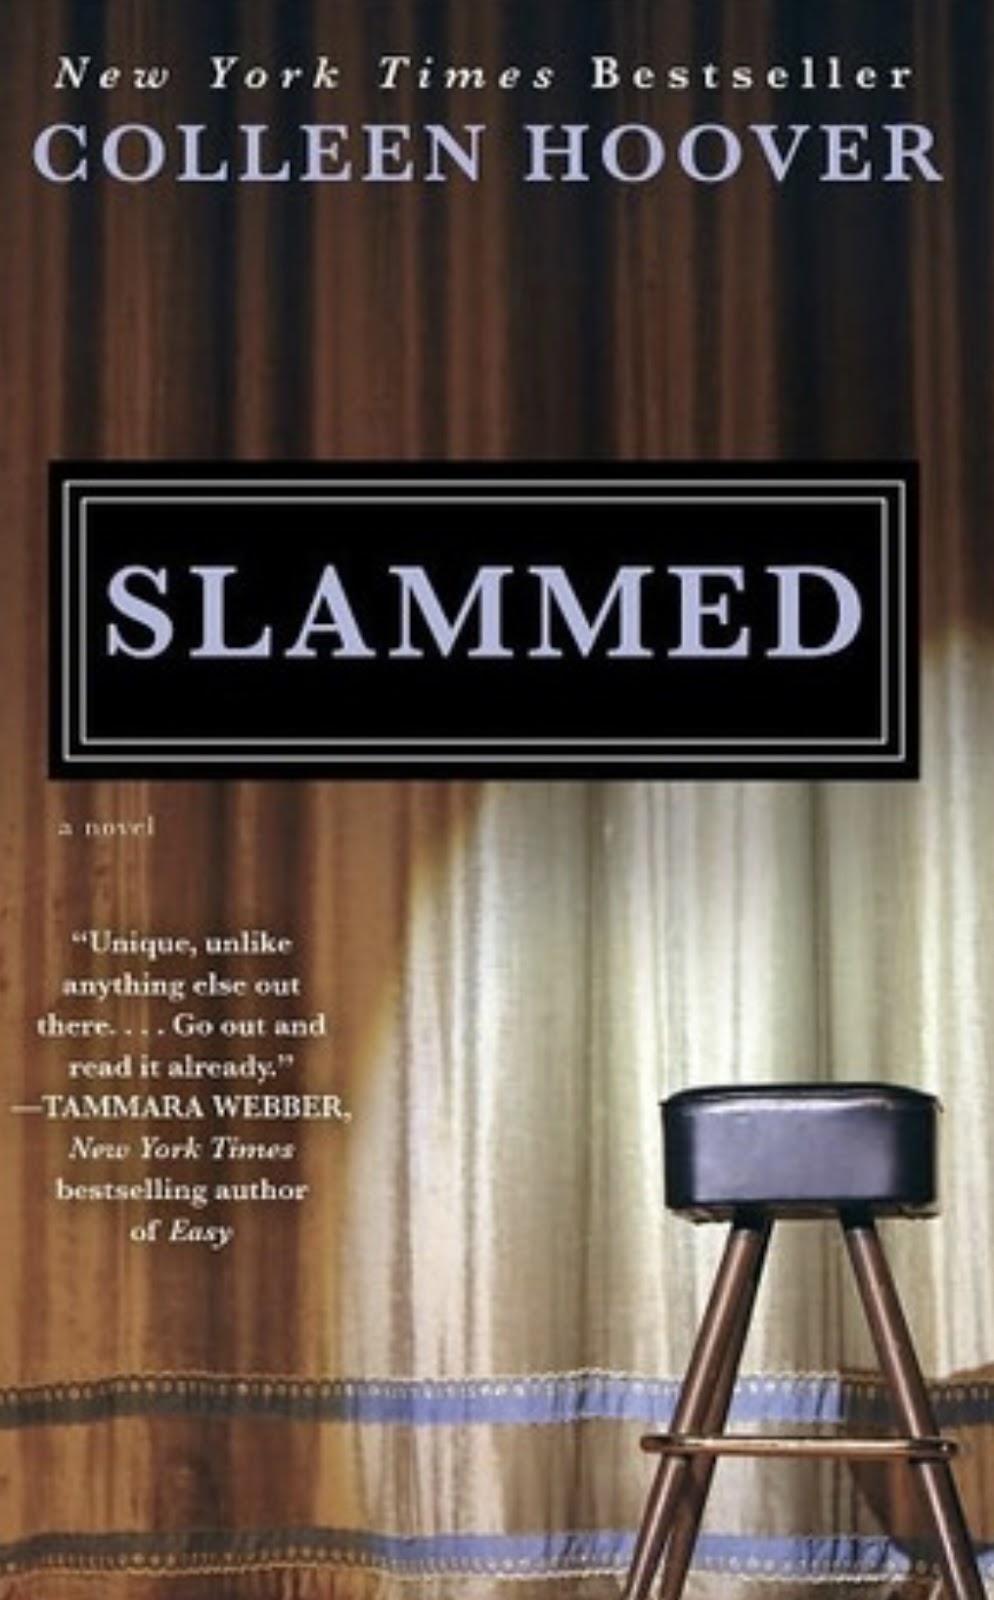 Slammed (2012) book.